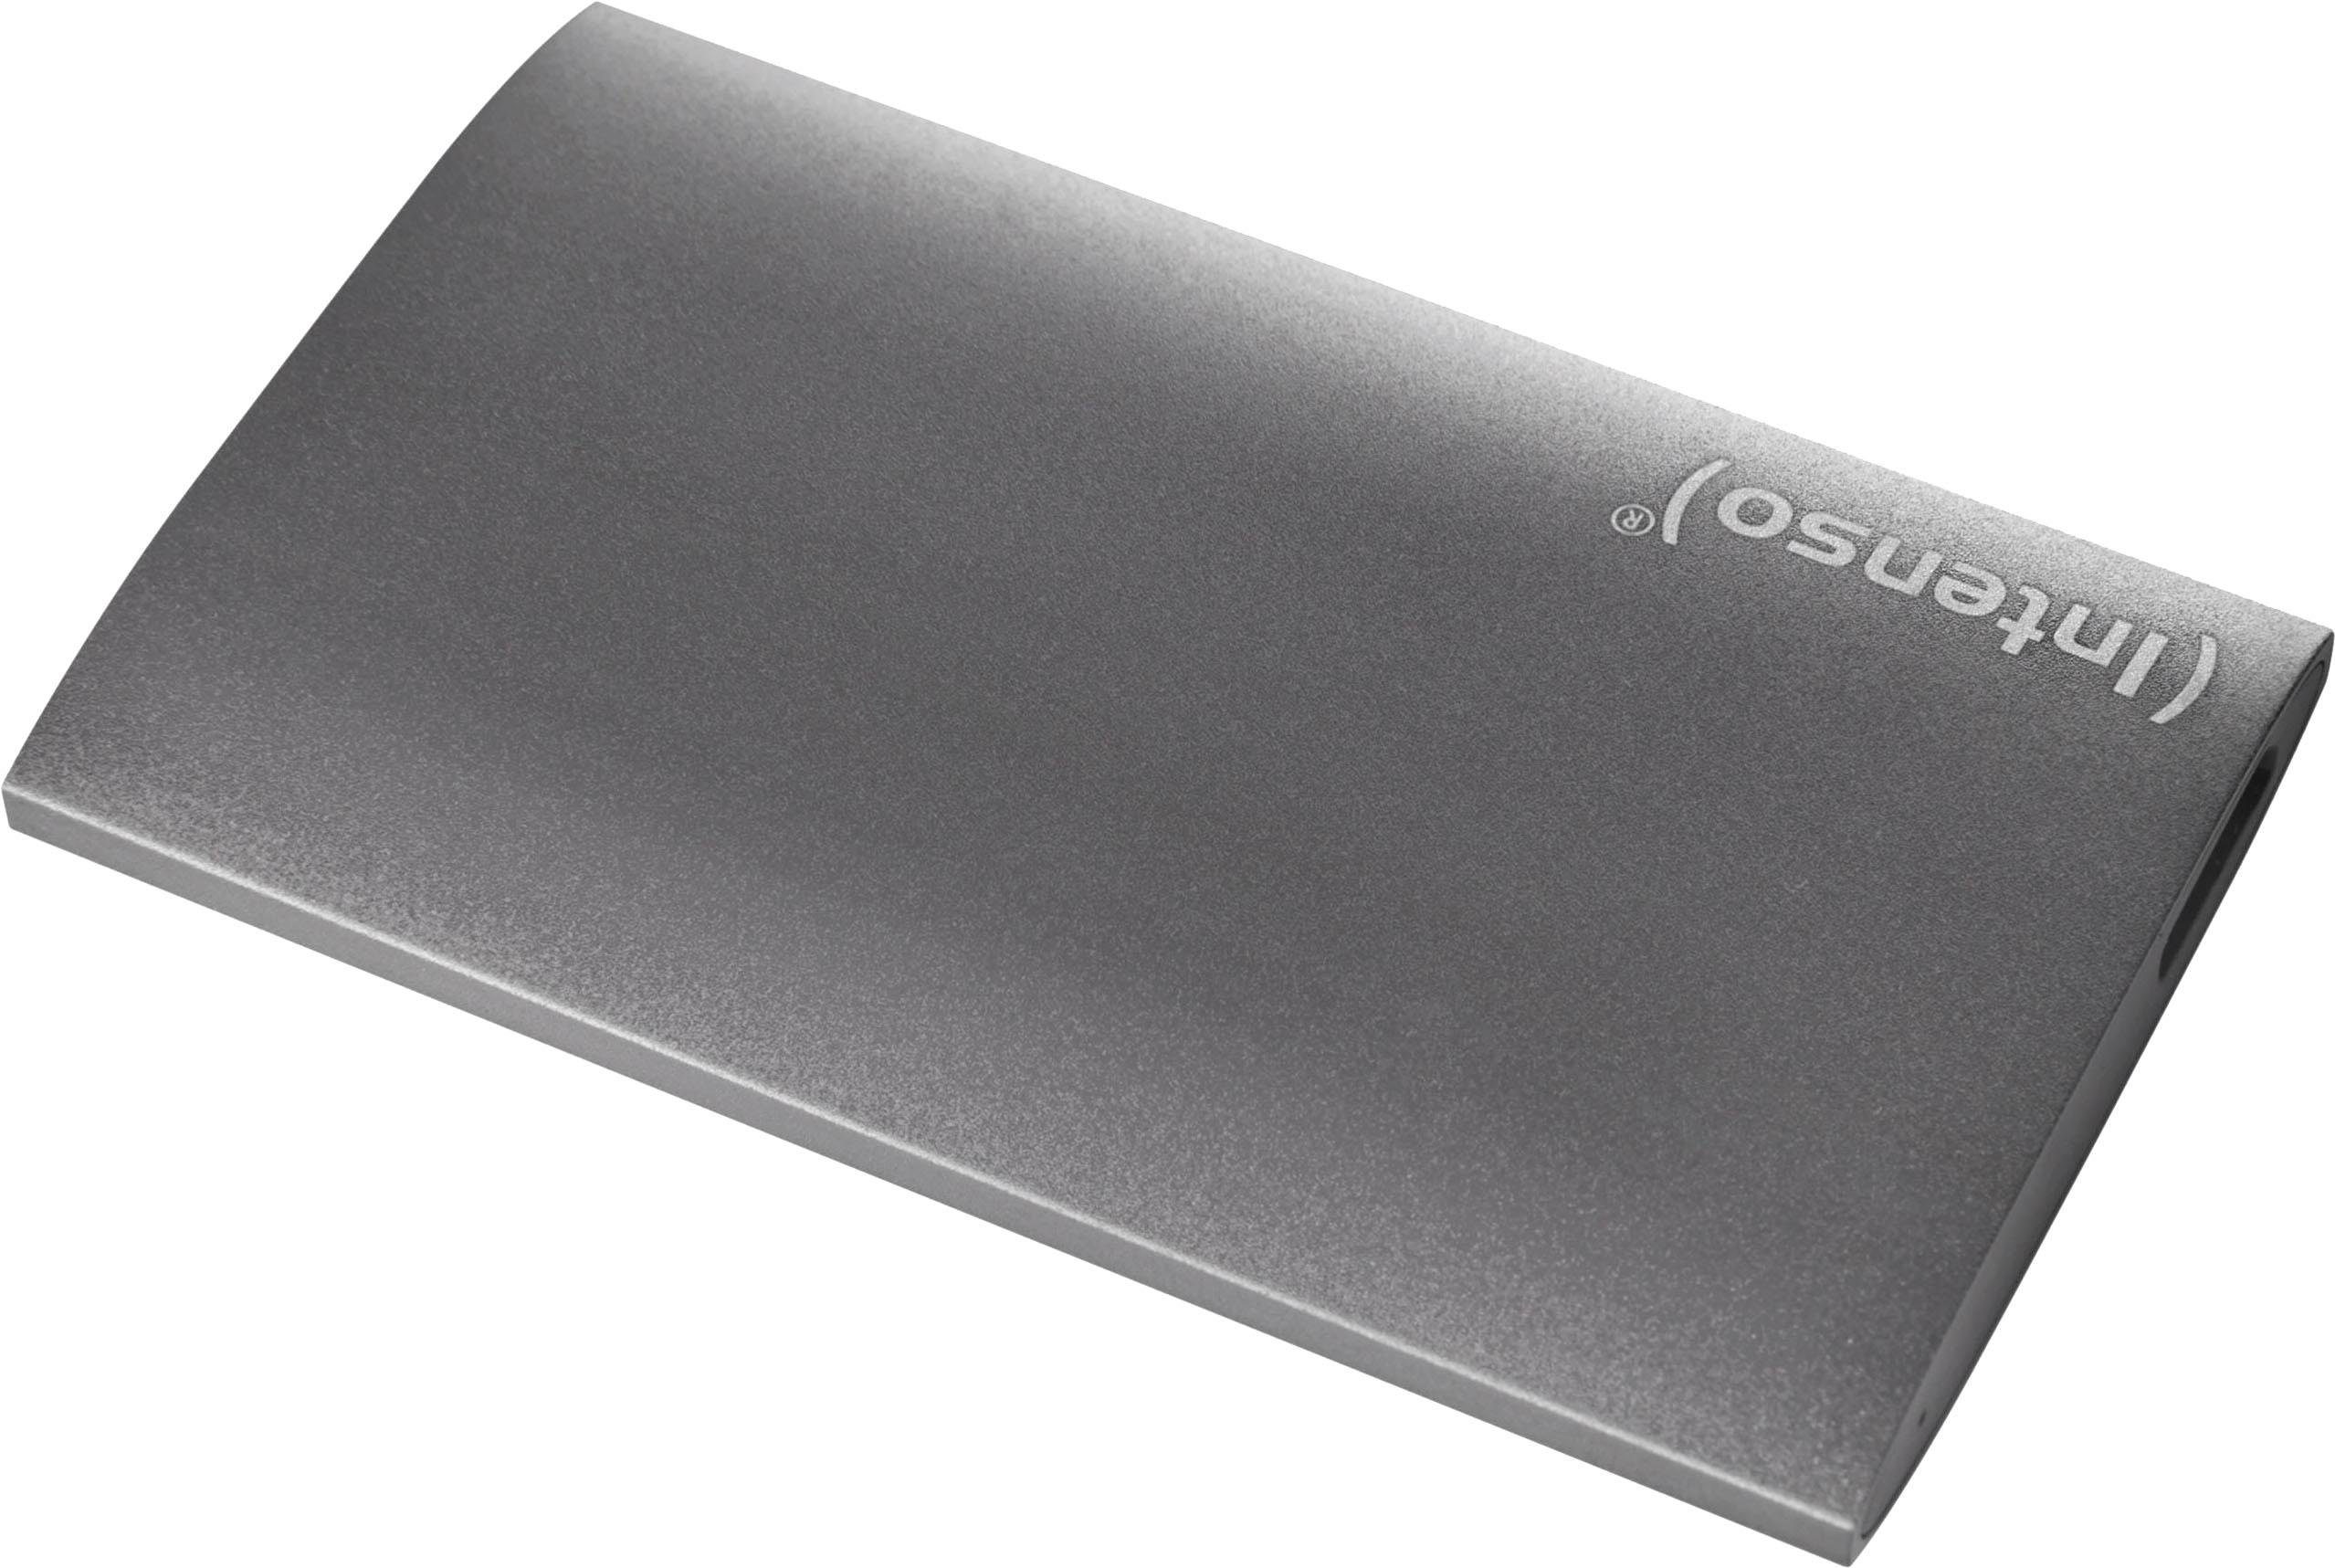 externe SSD, 256GB, 1,8", USB 3.0, Aluminium Premium Edition